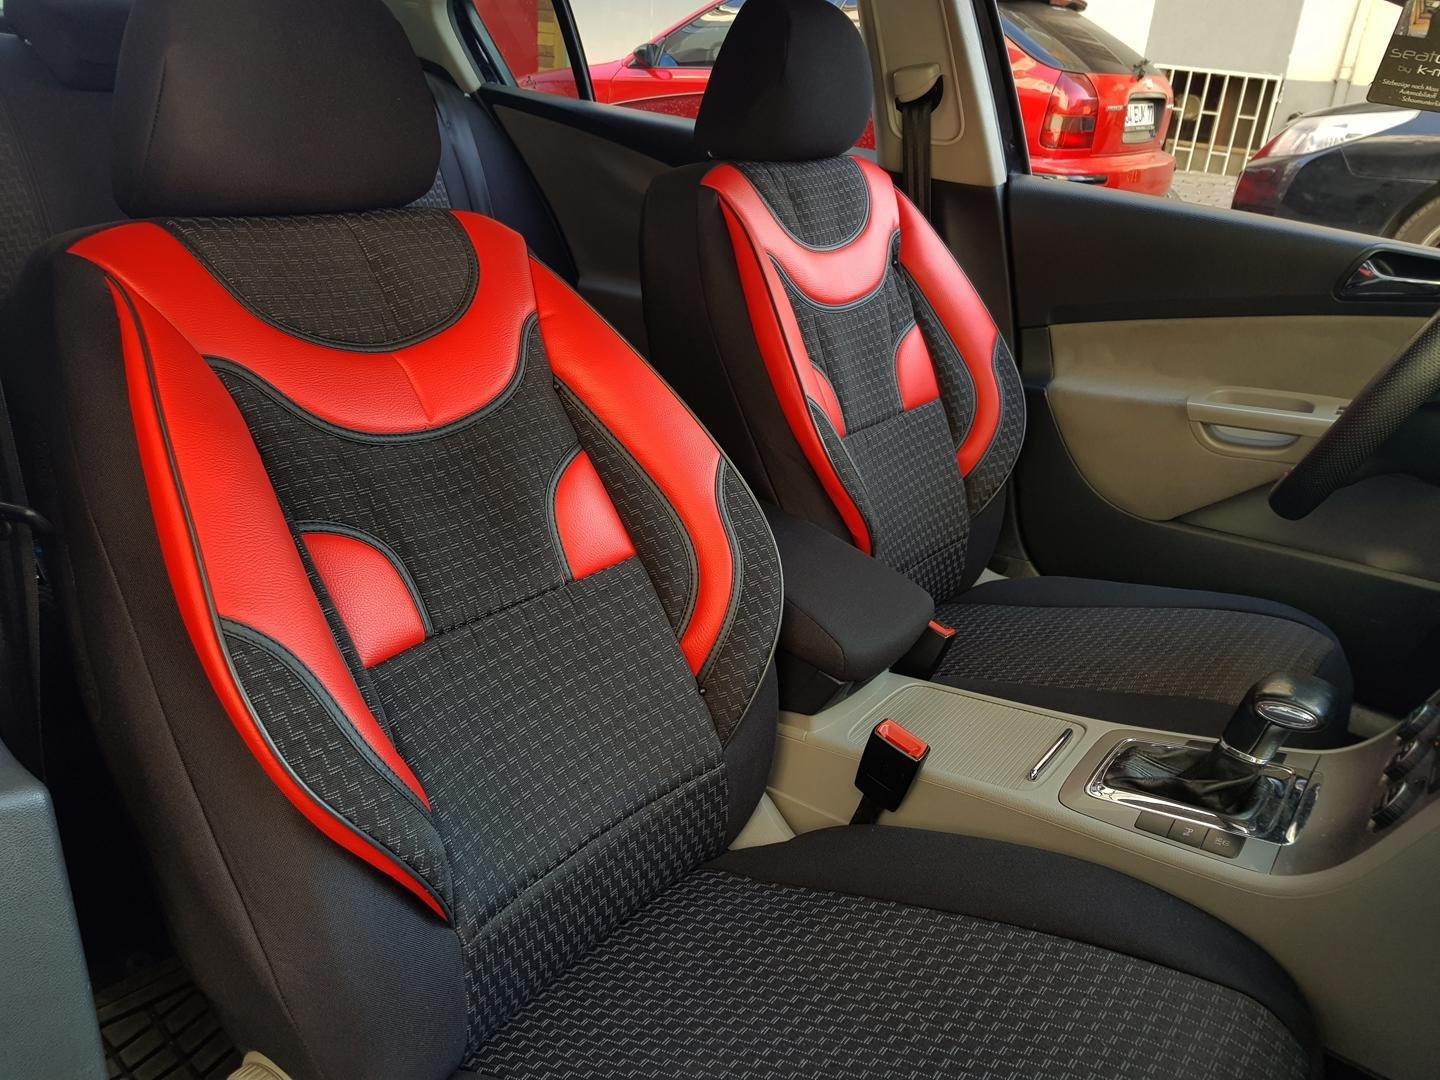 Housses de protection Sitzbezüge complet pour Hyundai Getz no414503 Noir-Rouge